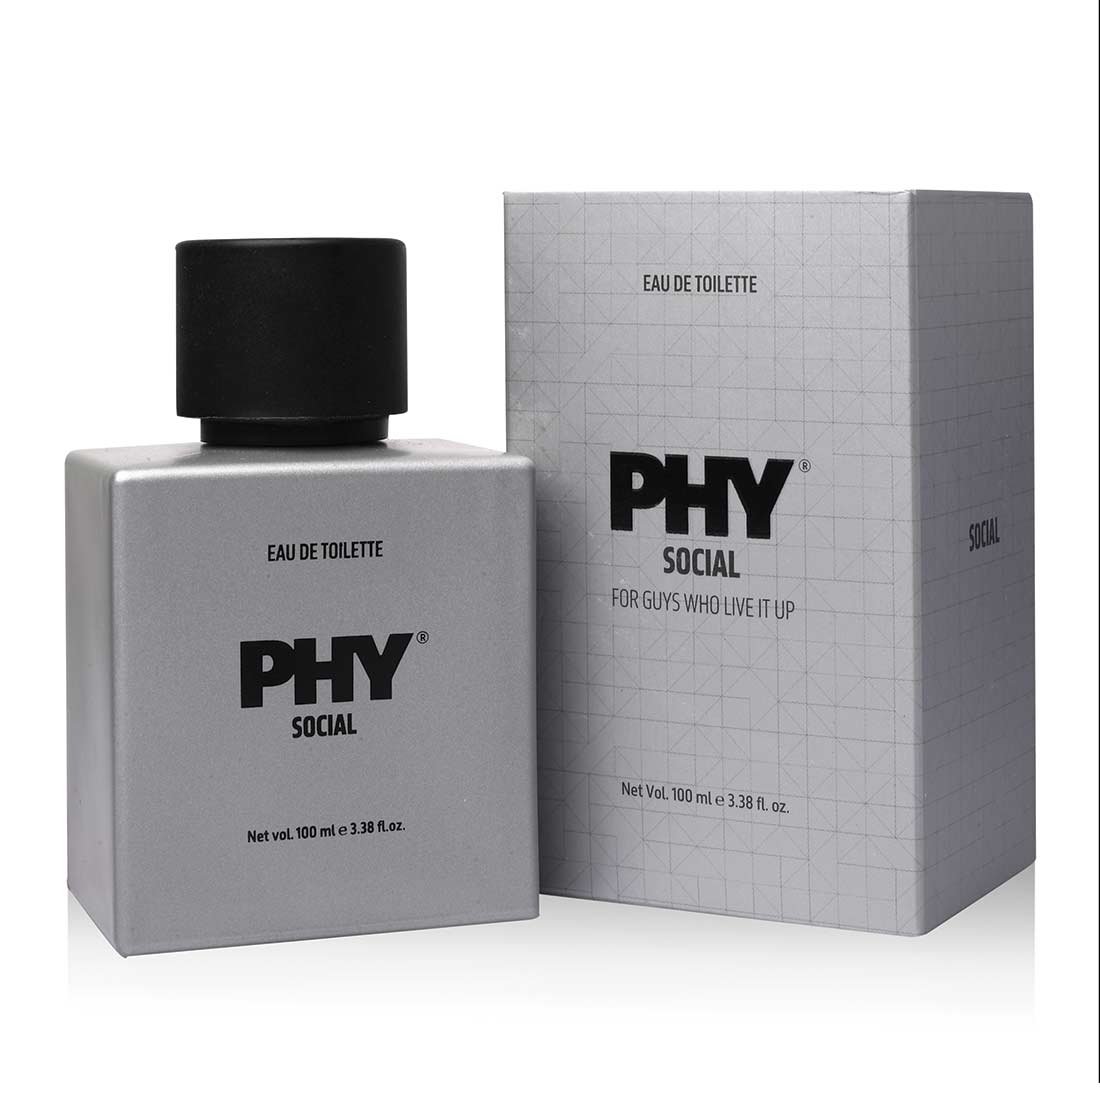 Phy Eau de toilette - Social - Men's Fragrance